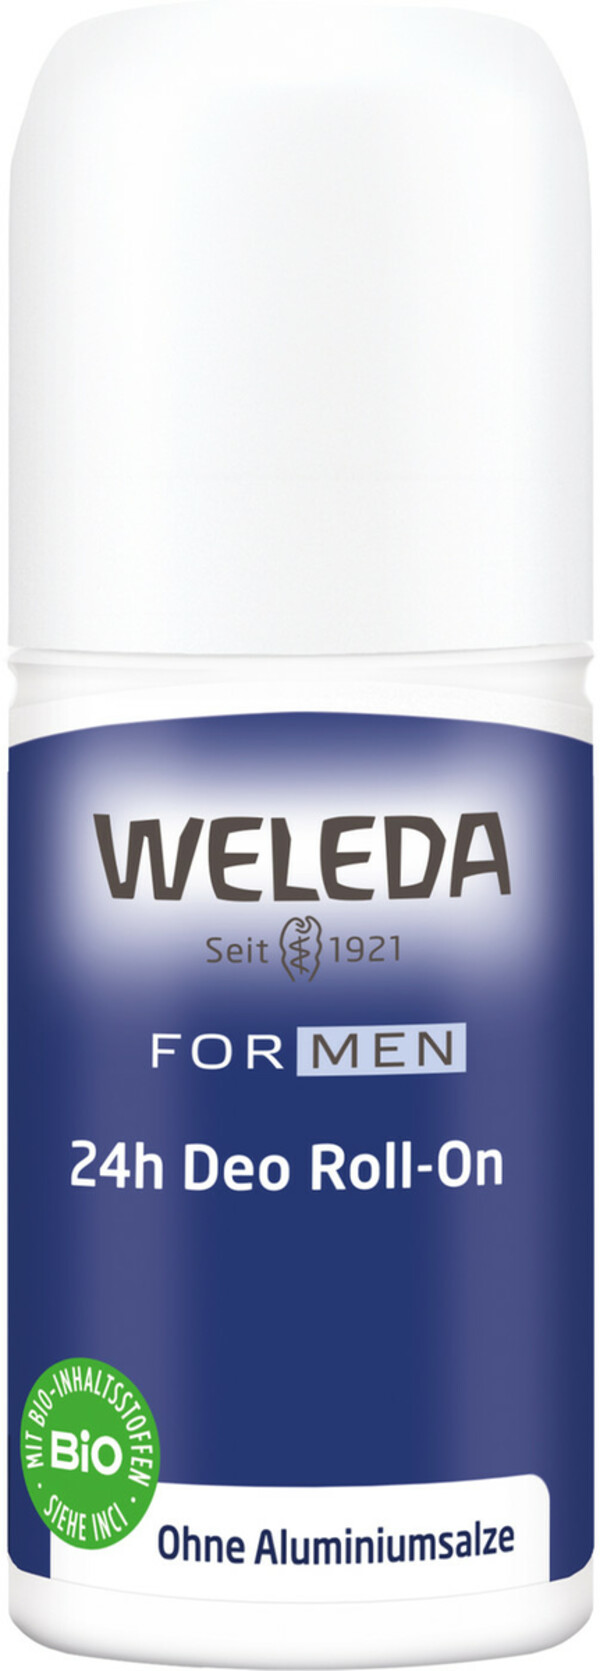 Bild 1 von Weleda For Men 24h Deo Roll-On 50ML